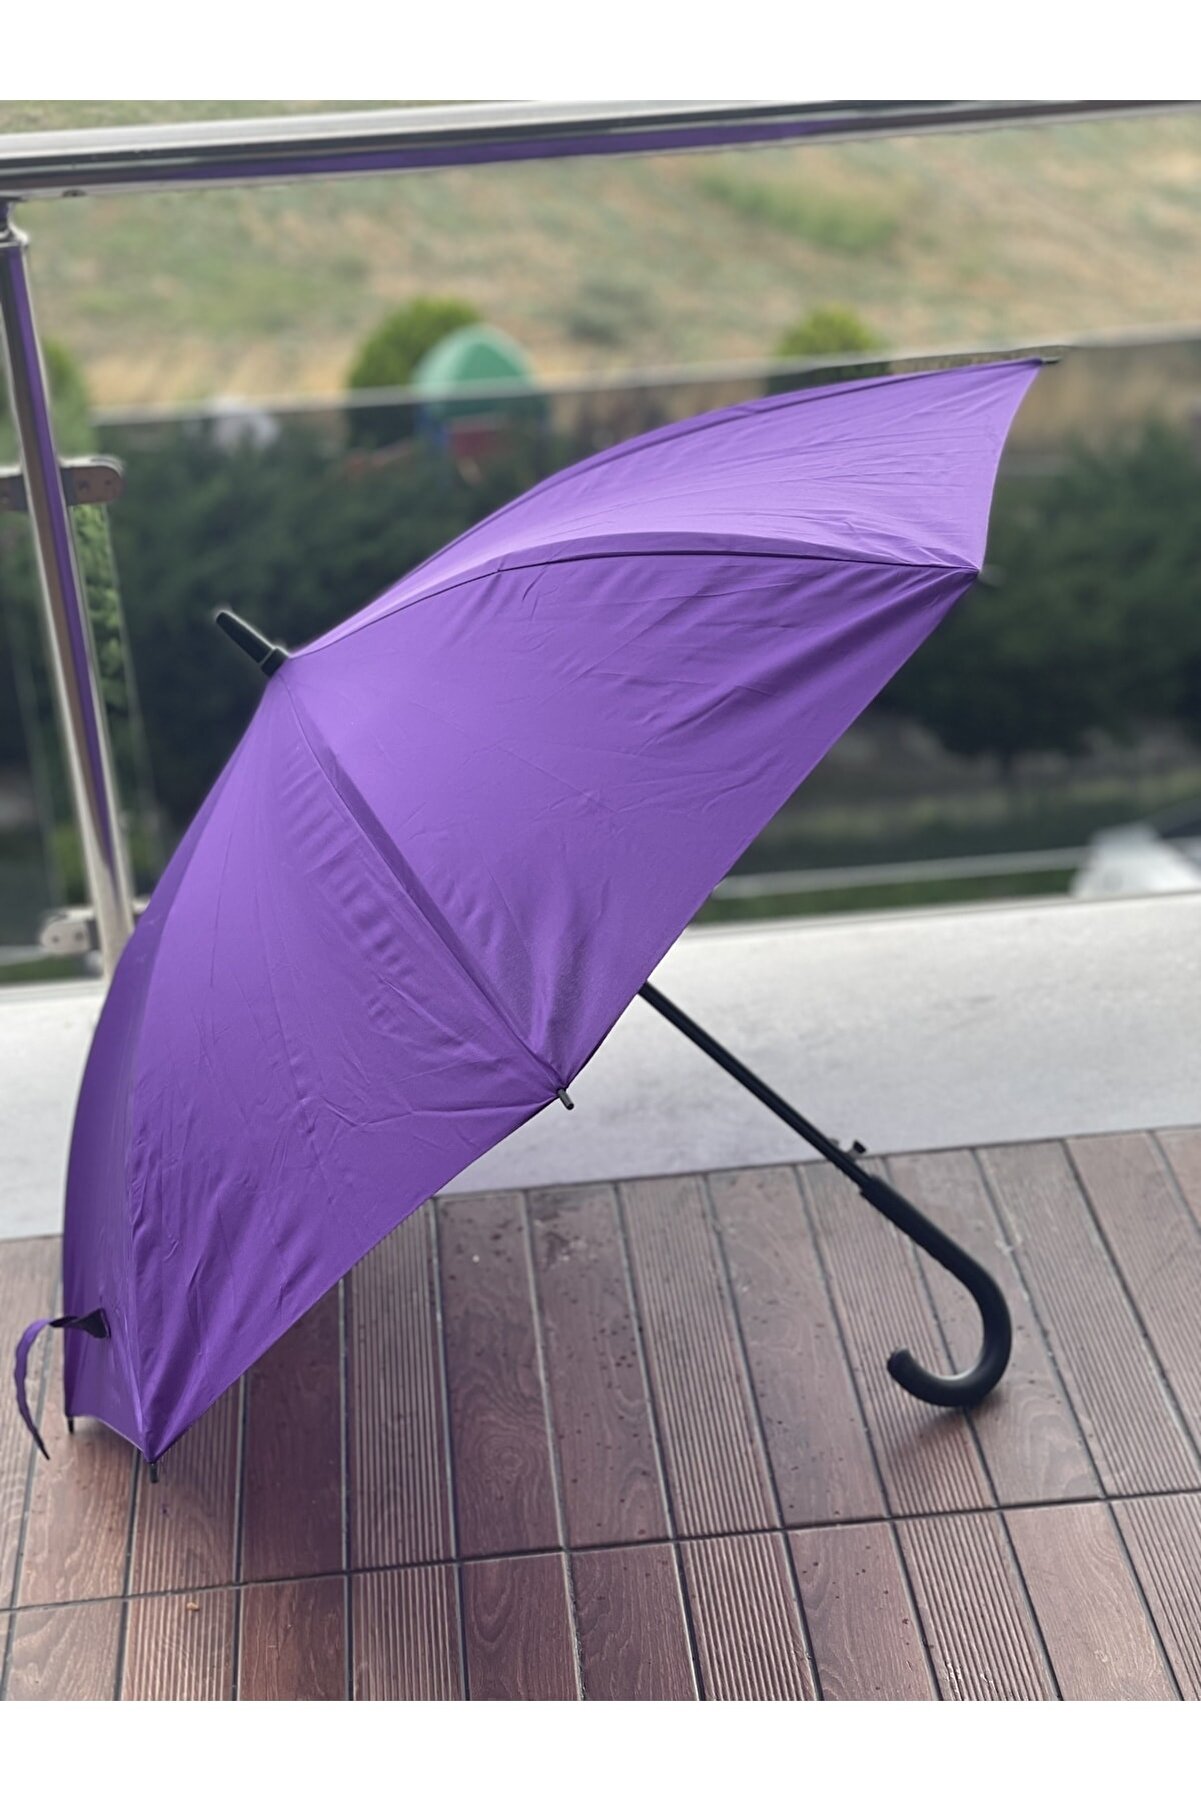 Sunlife 8 Telli Otomatik Fiberglass Baston Mor Renkli Yağmur Şemsiyesi